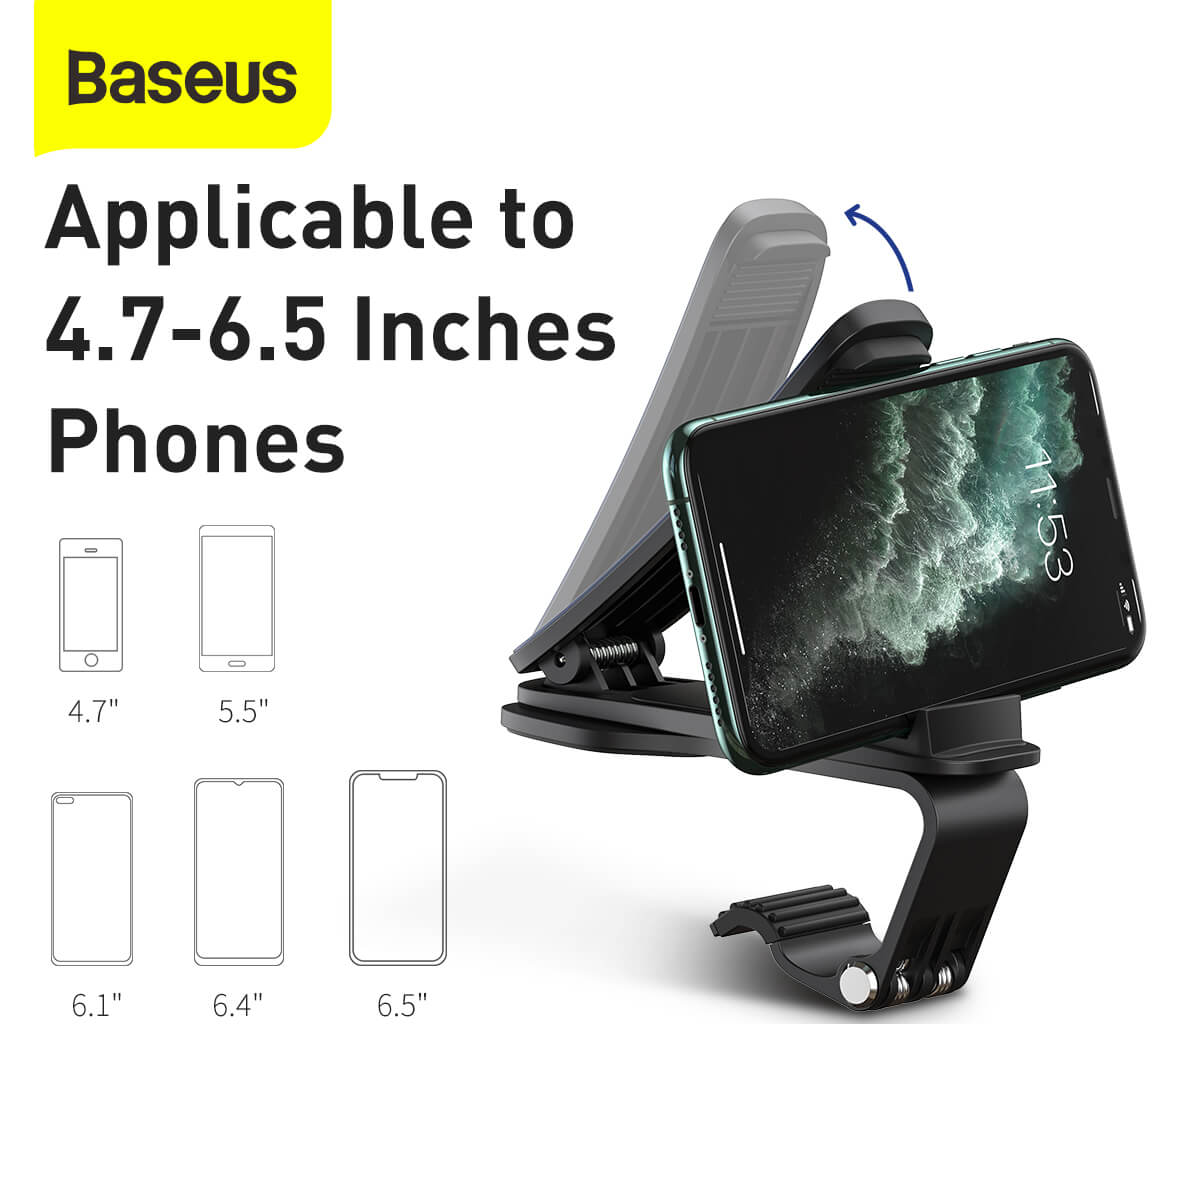 Giá đỡ điện thoại dạng kẹp ngang trên xe ô tô hiệu Baseus Big Mouth Pro Car Mount cho iPhone, Samsung, Oppo, Xiaomi, Huawei, Nokia (chế độ xoay 360 độ, vật liệu metal cao cấp, thiết kế nhỏ gọn, dùng cho điện thoại 4.7 đến 6.5 inch) - hàng nhập khẩu